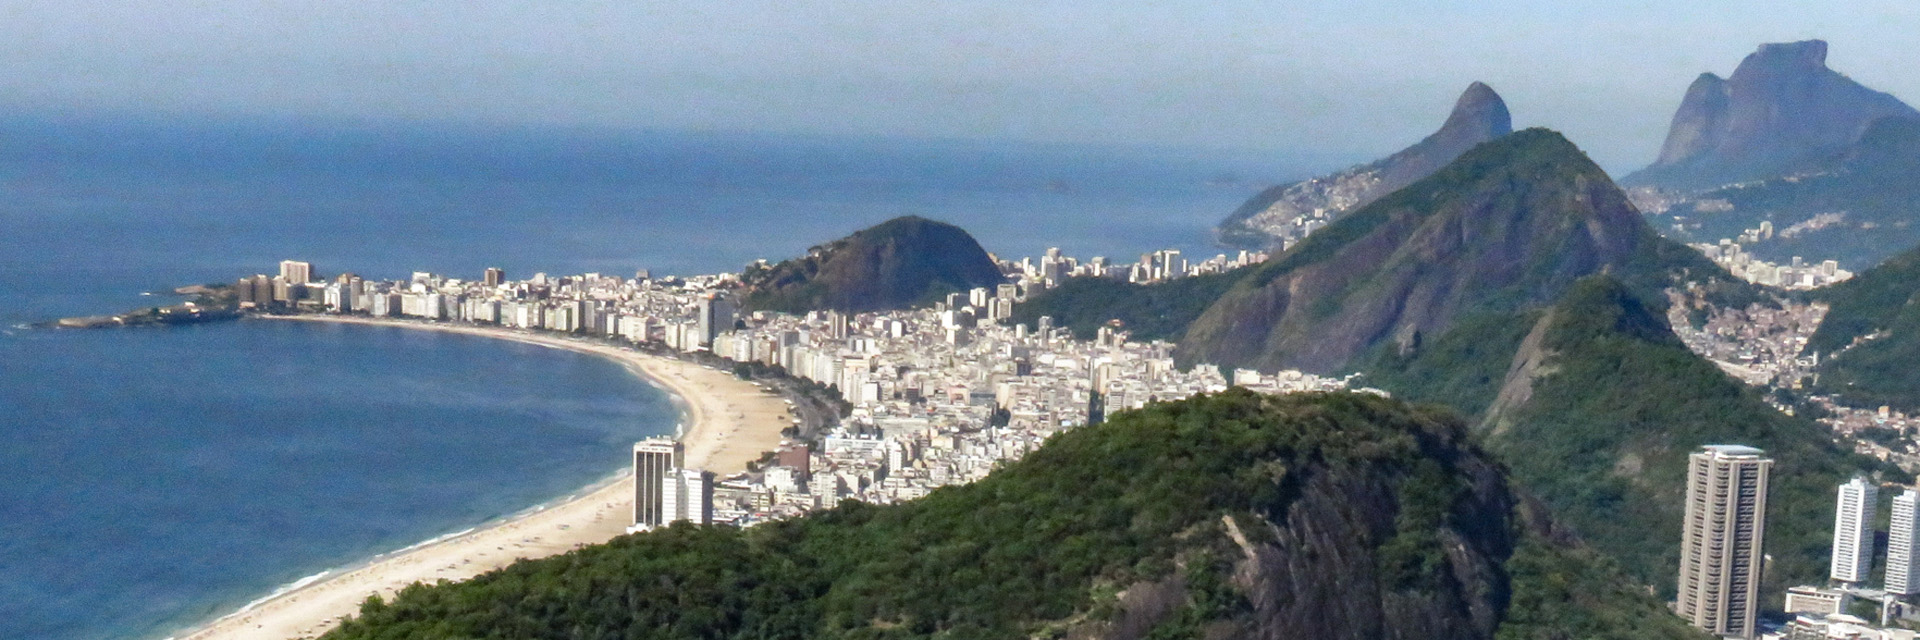 Roteiro de passeios no Rio de Janeiro